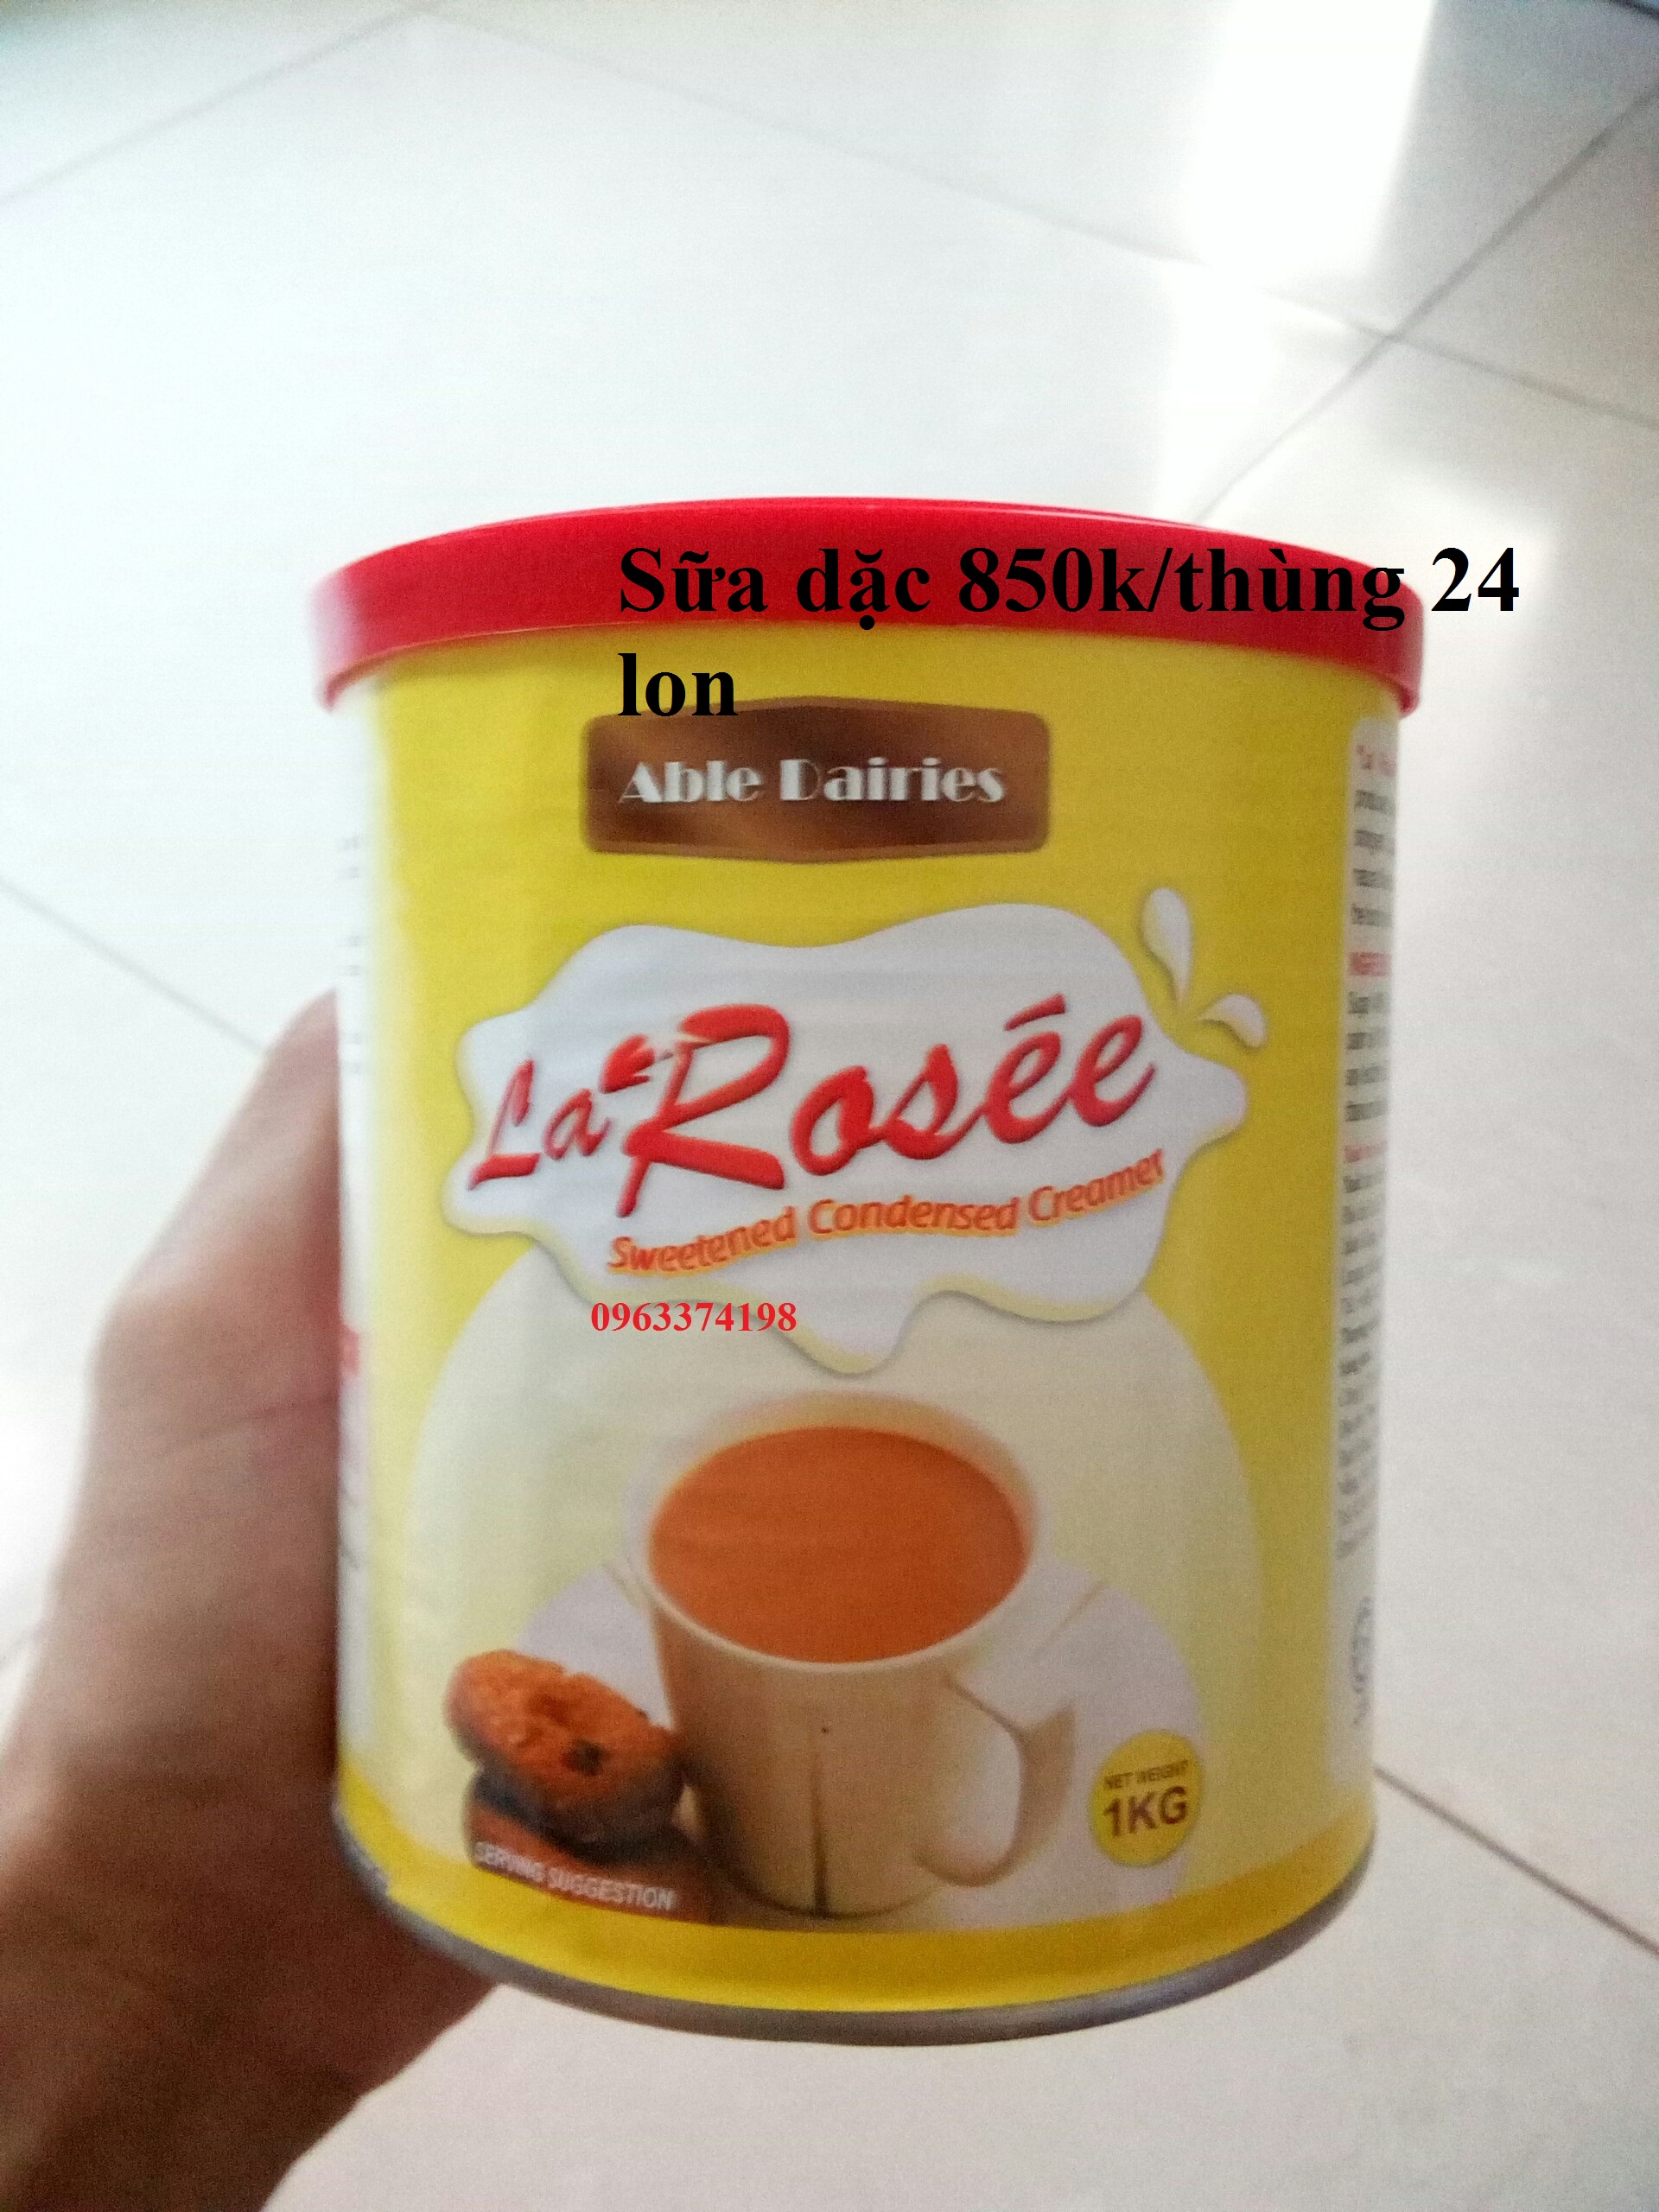 Sữa Đặc Larosee Lon 1kg Malaysia - Nguyên liệu pha chế